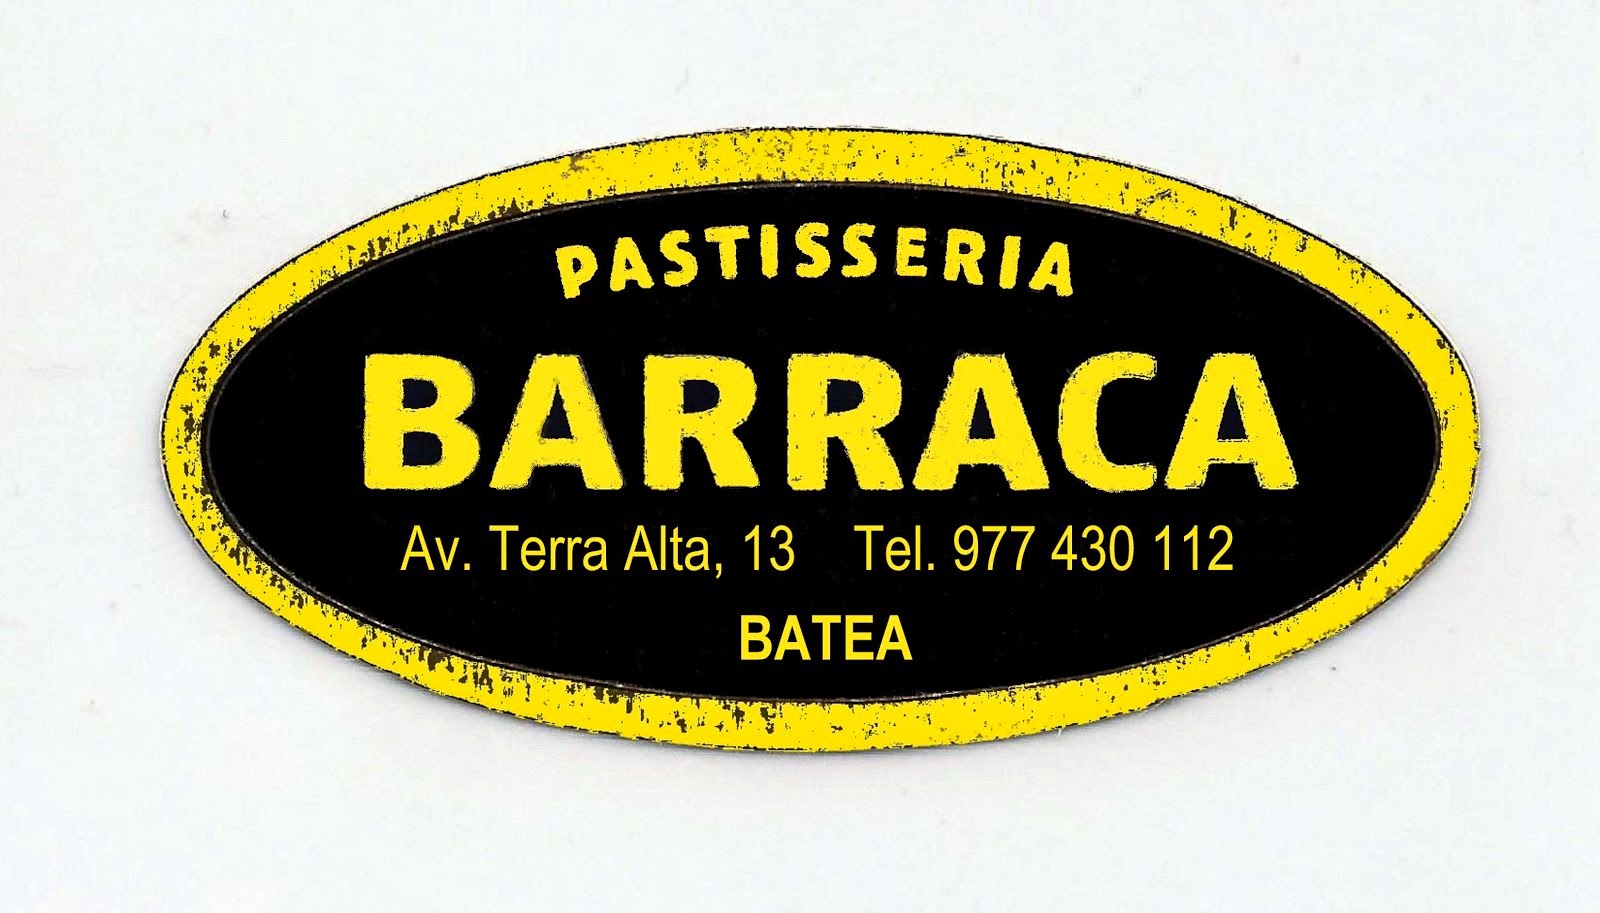 Pastisseria Barraca